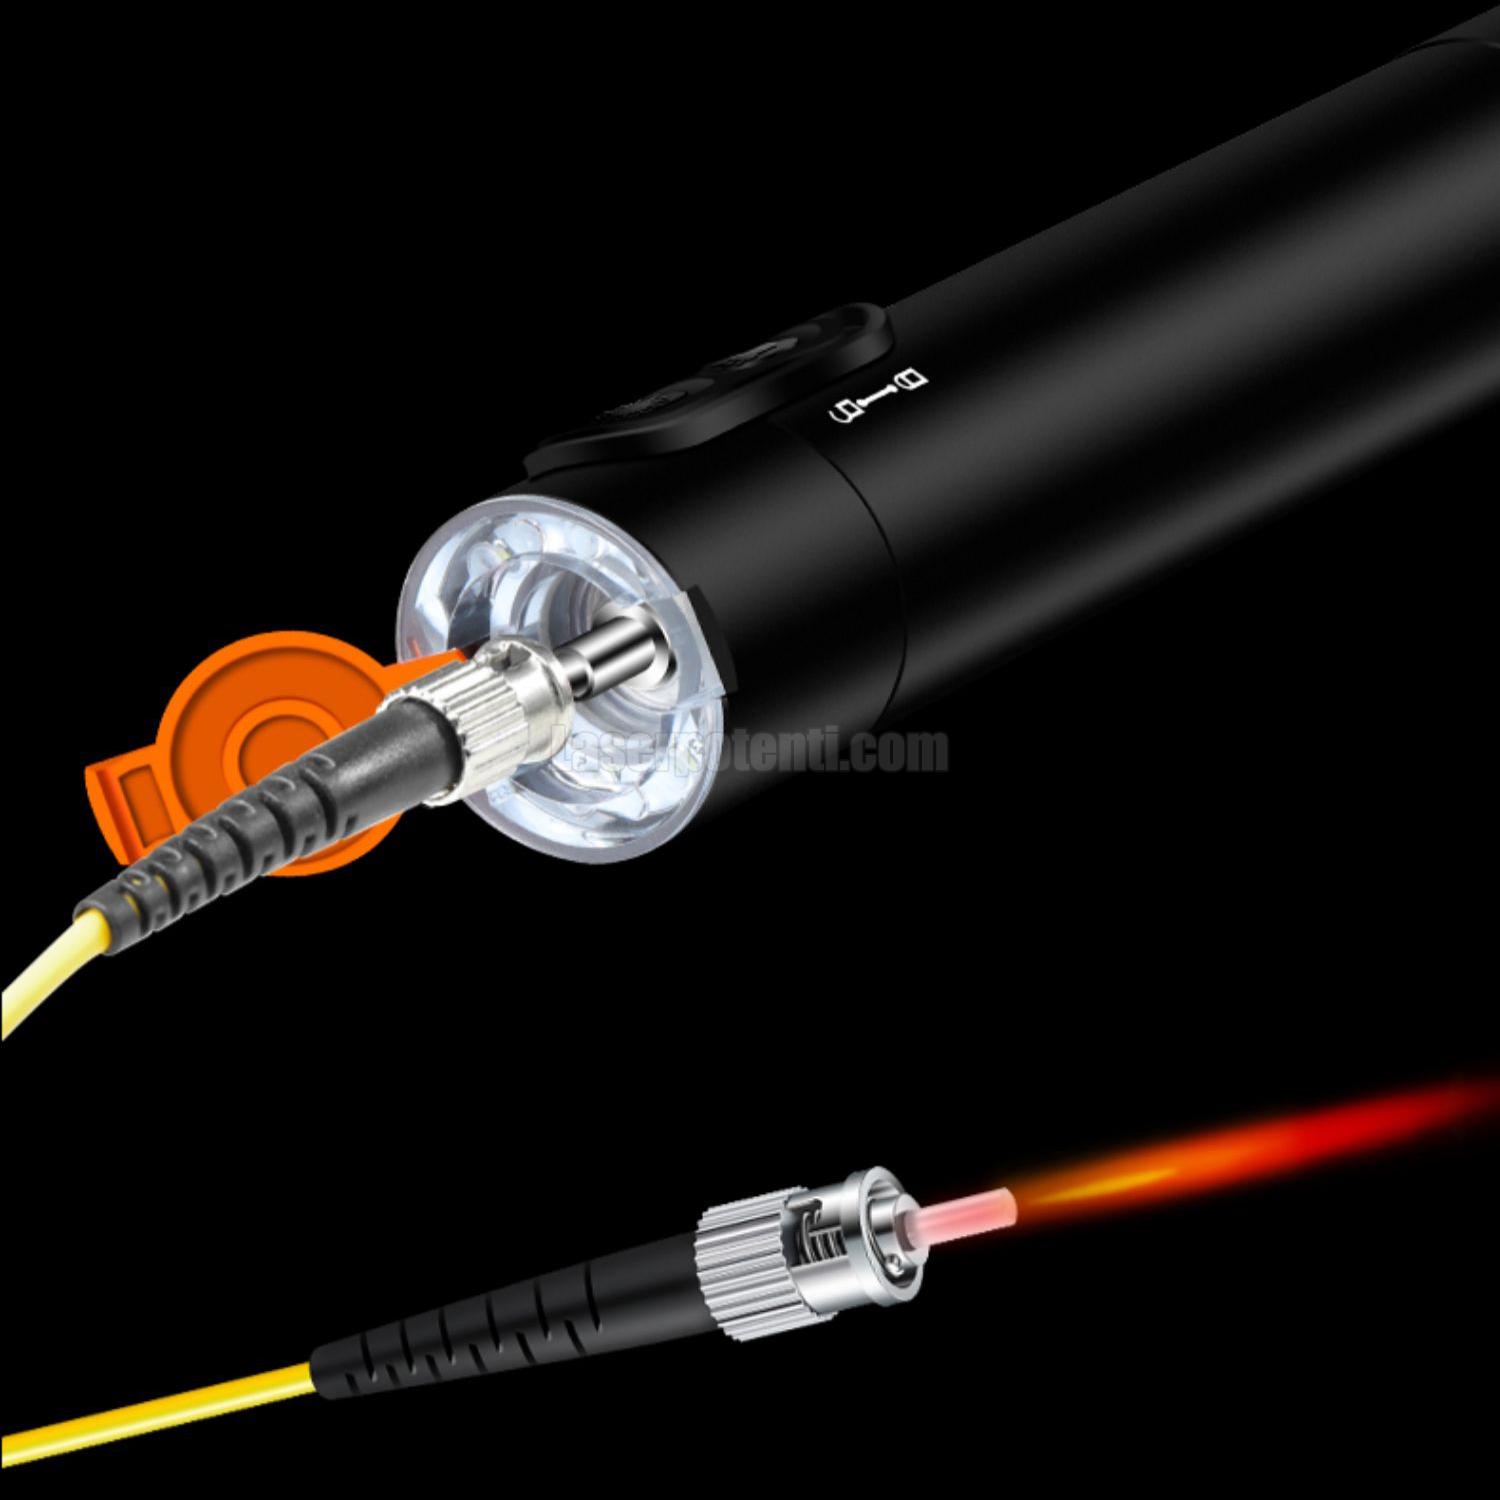 Puntatore laser fibra ottica lunga distanza 50 km con illuminazione a LED